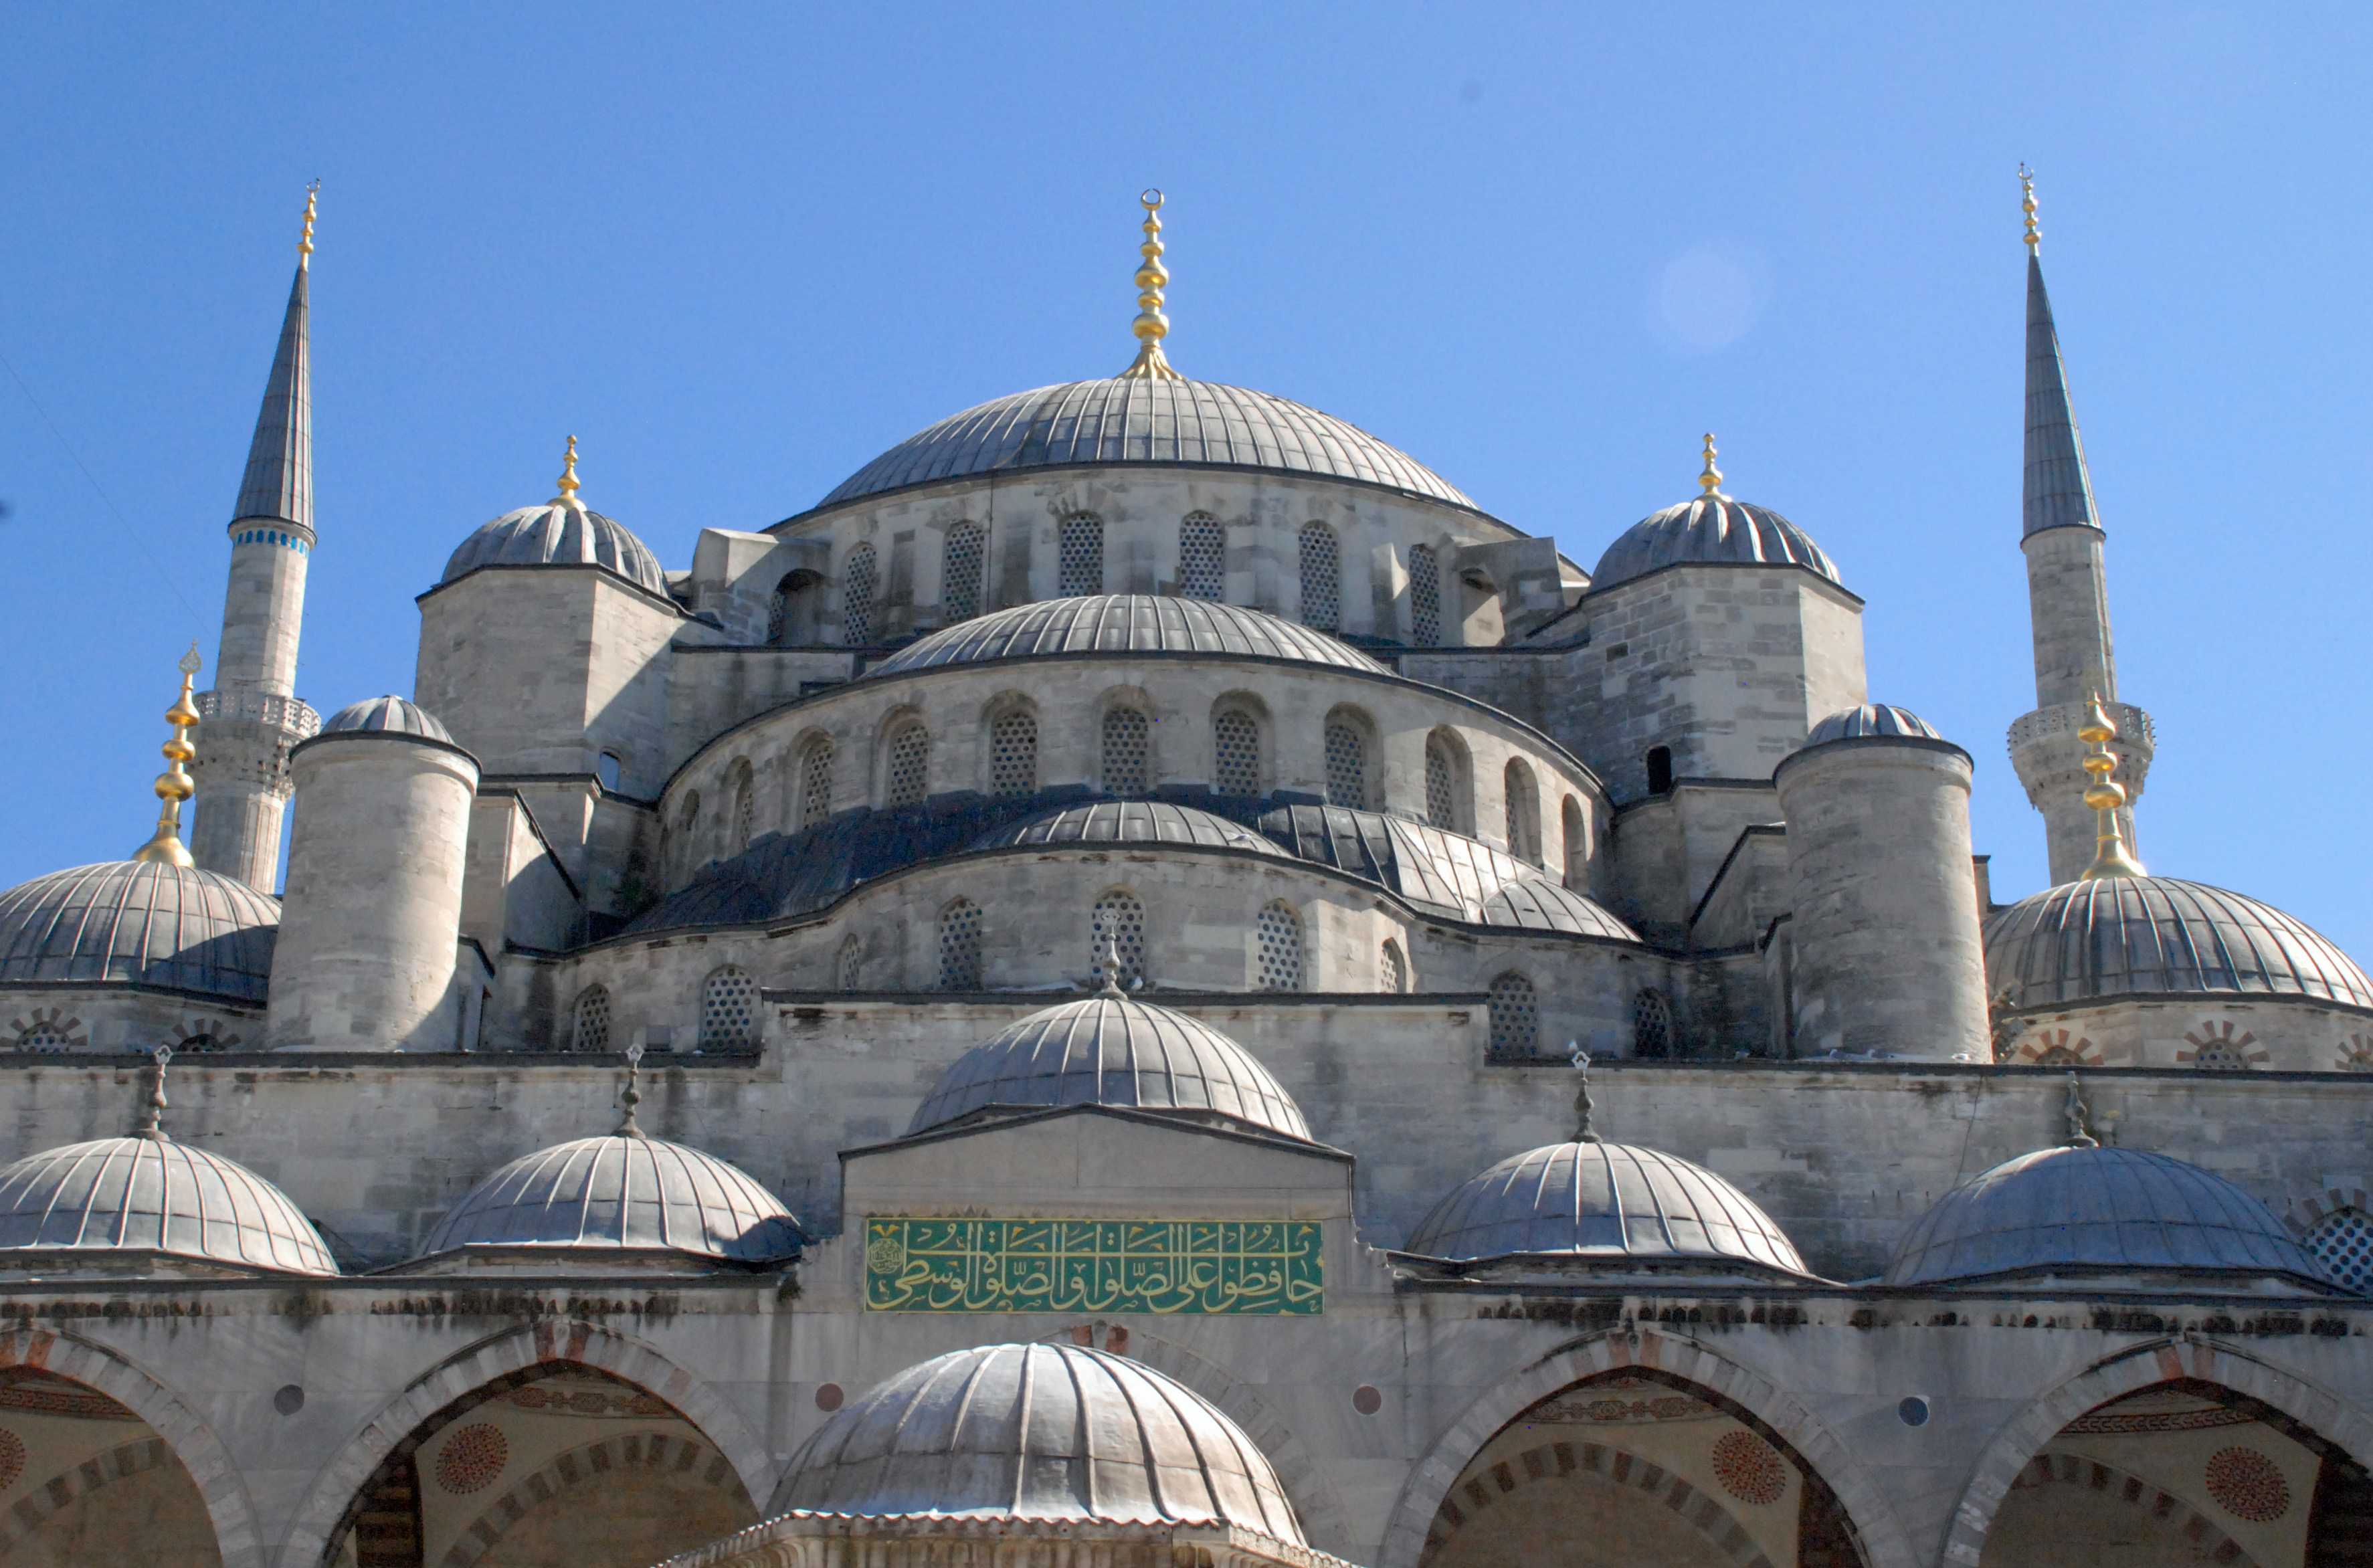 Мавзолей султана ахмеда 1 в стамбуле 2022: описание, фото, месторасположение, часы работы достопримечательности